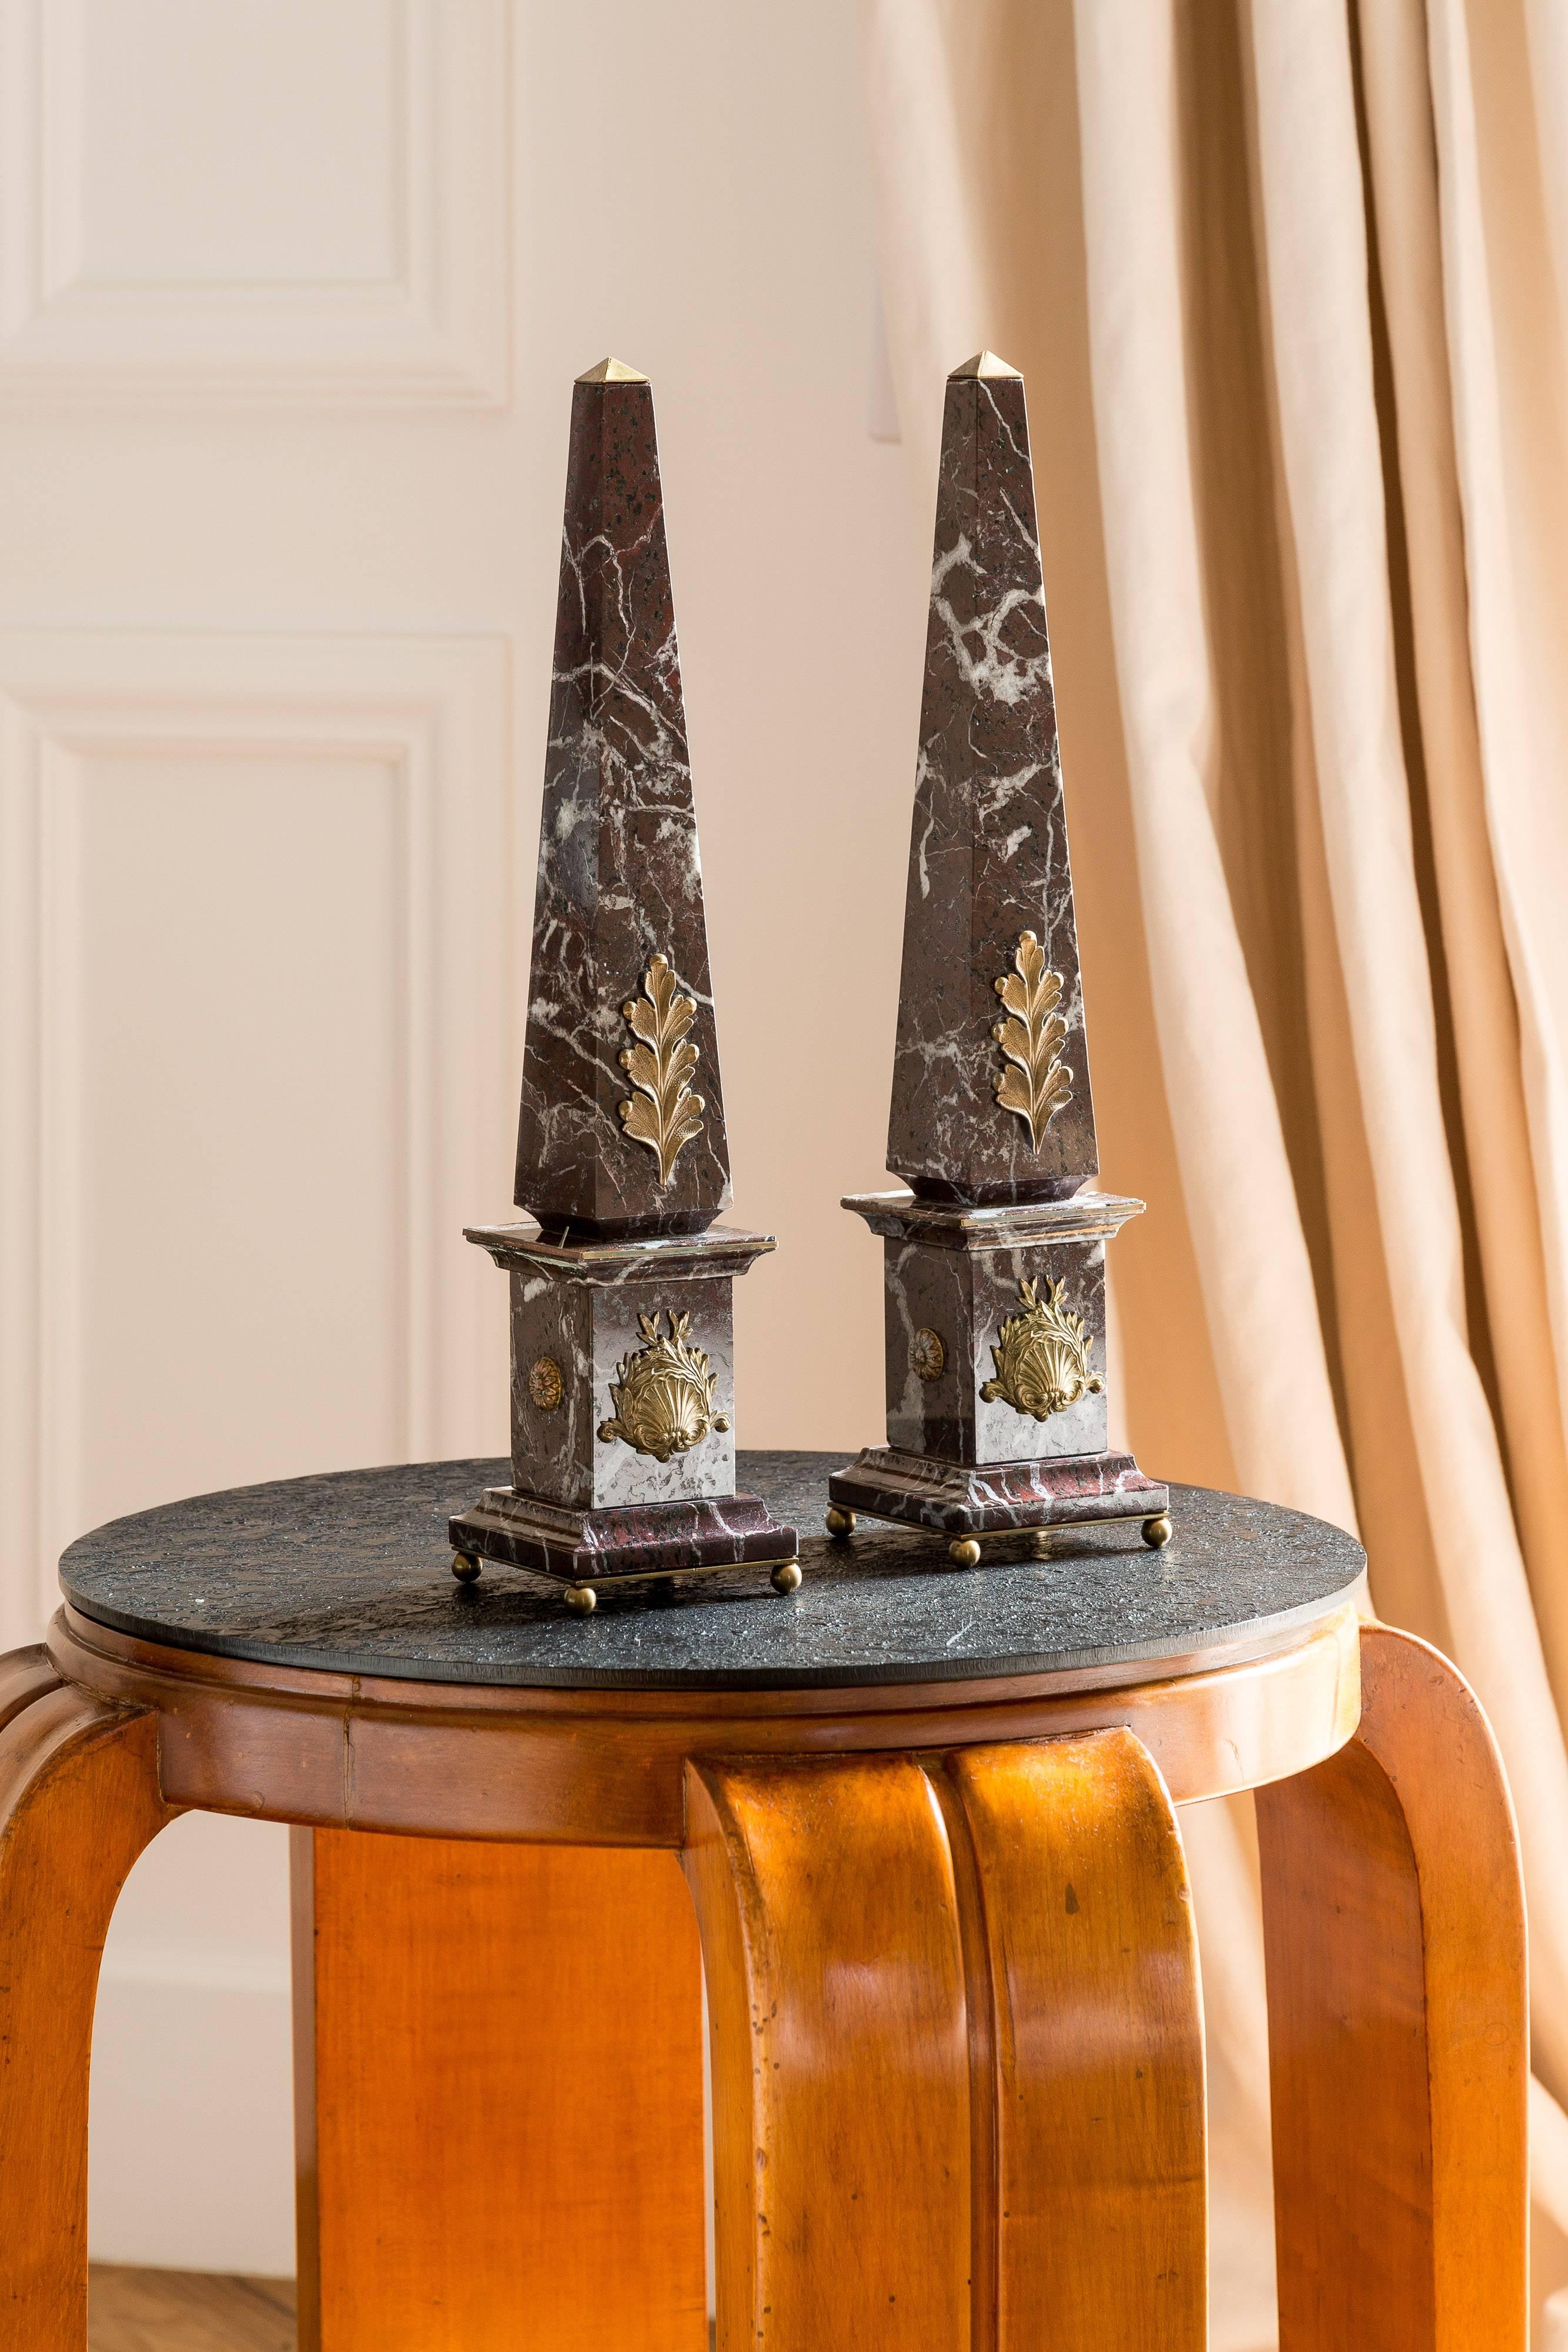 paar italienische Obelisken aus Marmor und Bronze, ACANTHUS , -grand tour collection- hergestellt von Lorenzo Ciompi, 2017 
exklusiv für COMPENDIO GALLERY in einer limitierten Auflage von 10 Stück entworfen, produziert und ausgeführt 
alle